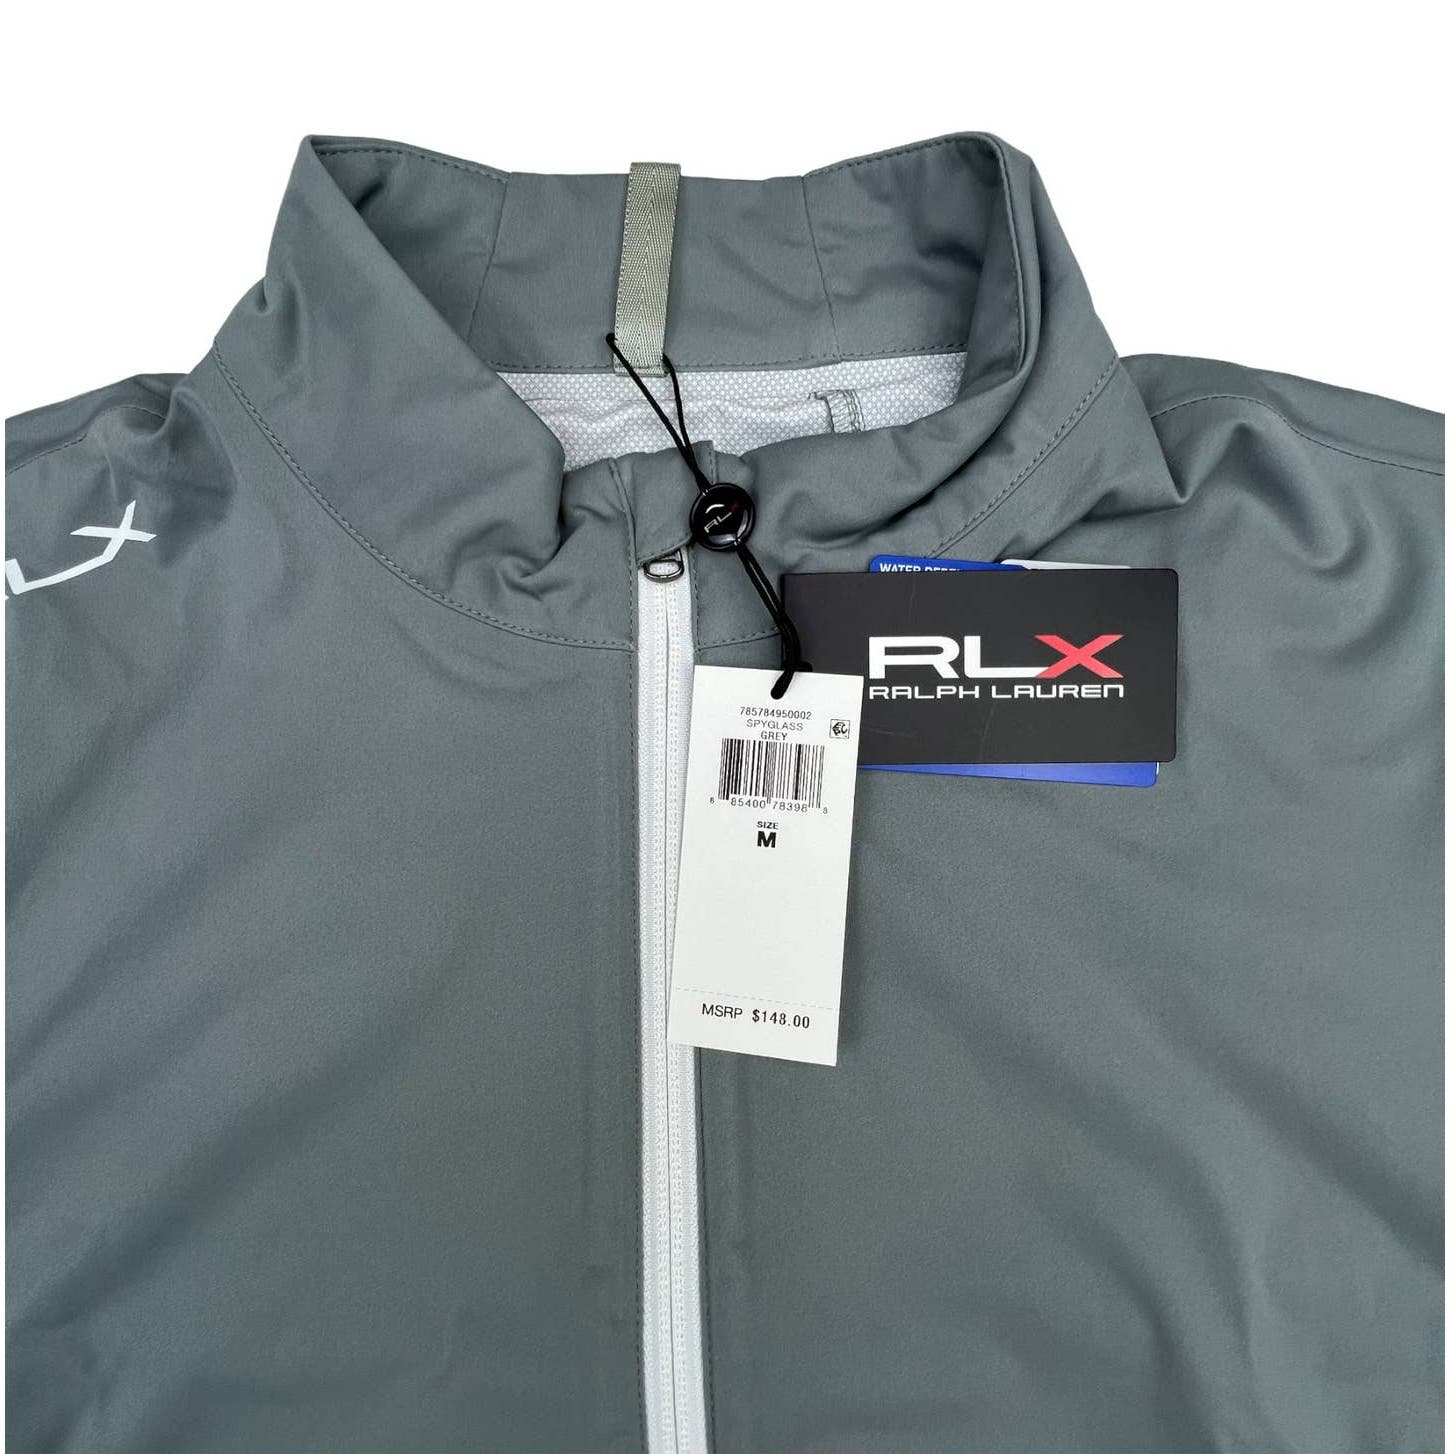 RLX Ralph Lauren Men Grey Sweatshirt US M Half Zip Long Sleeve